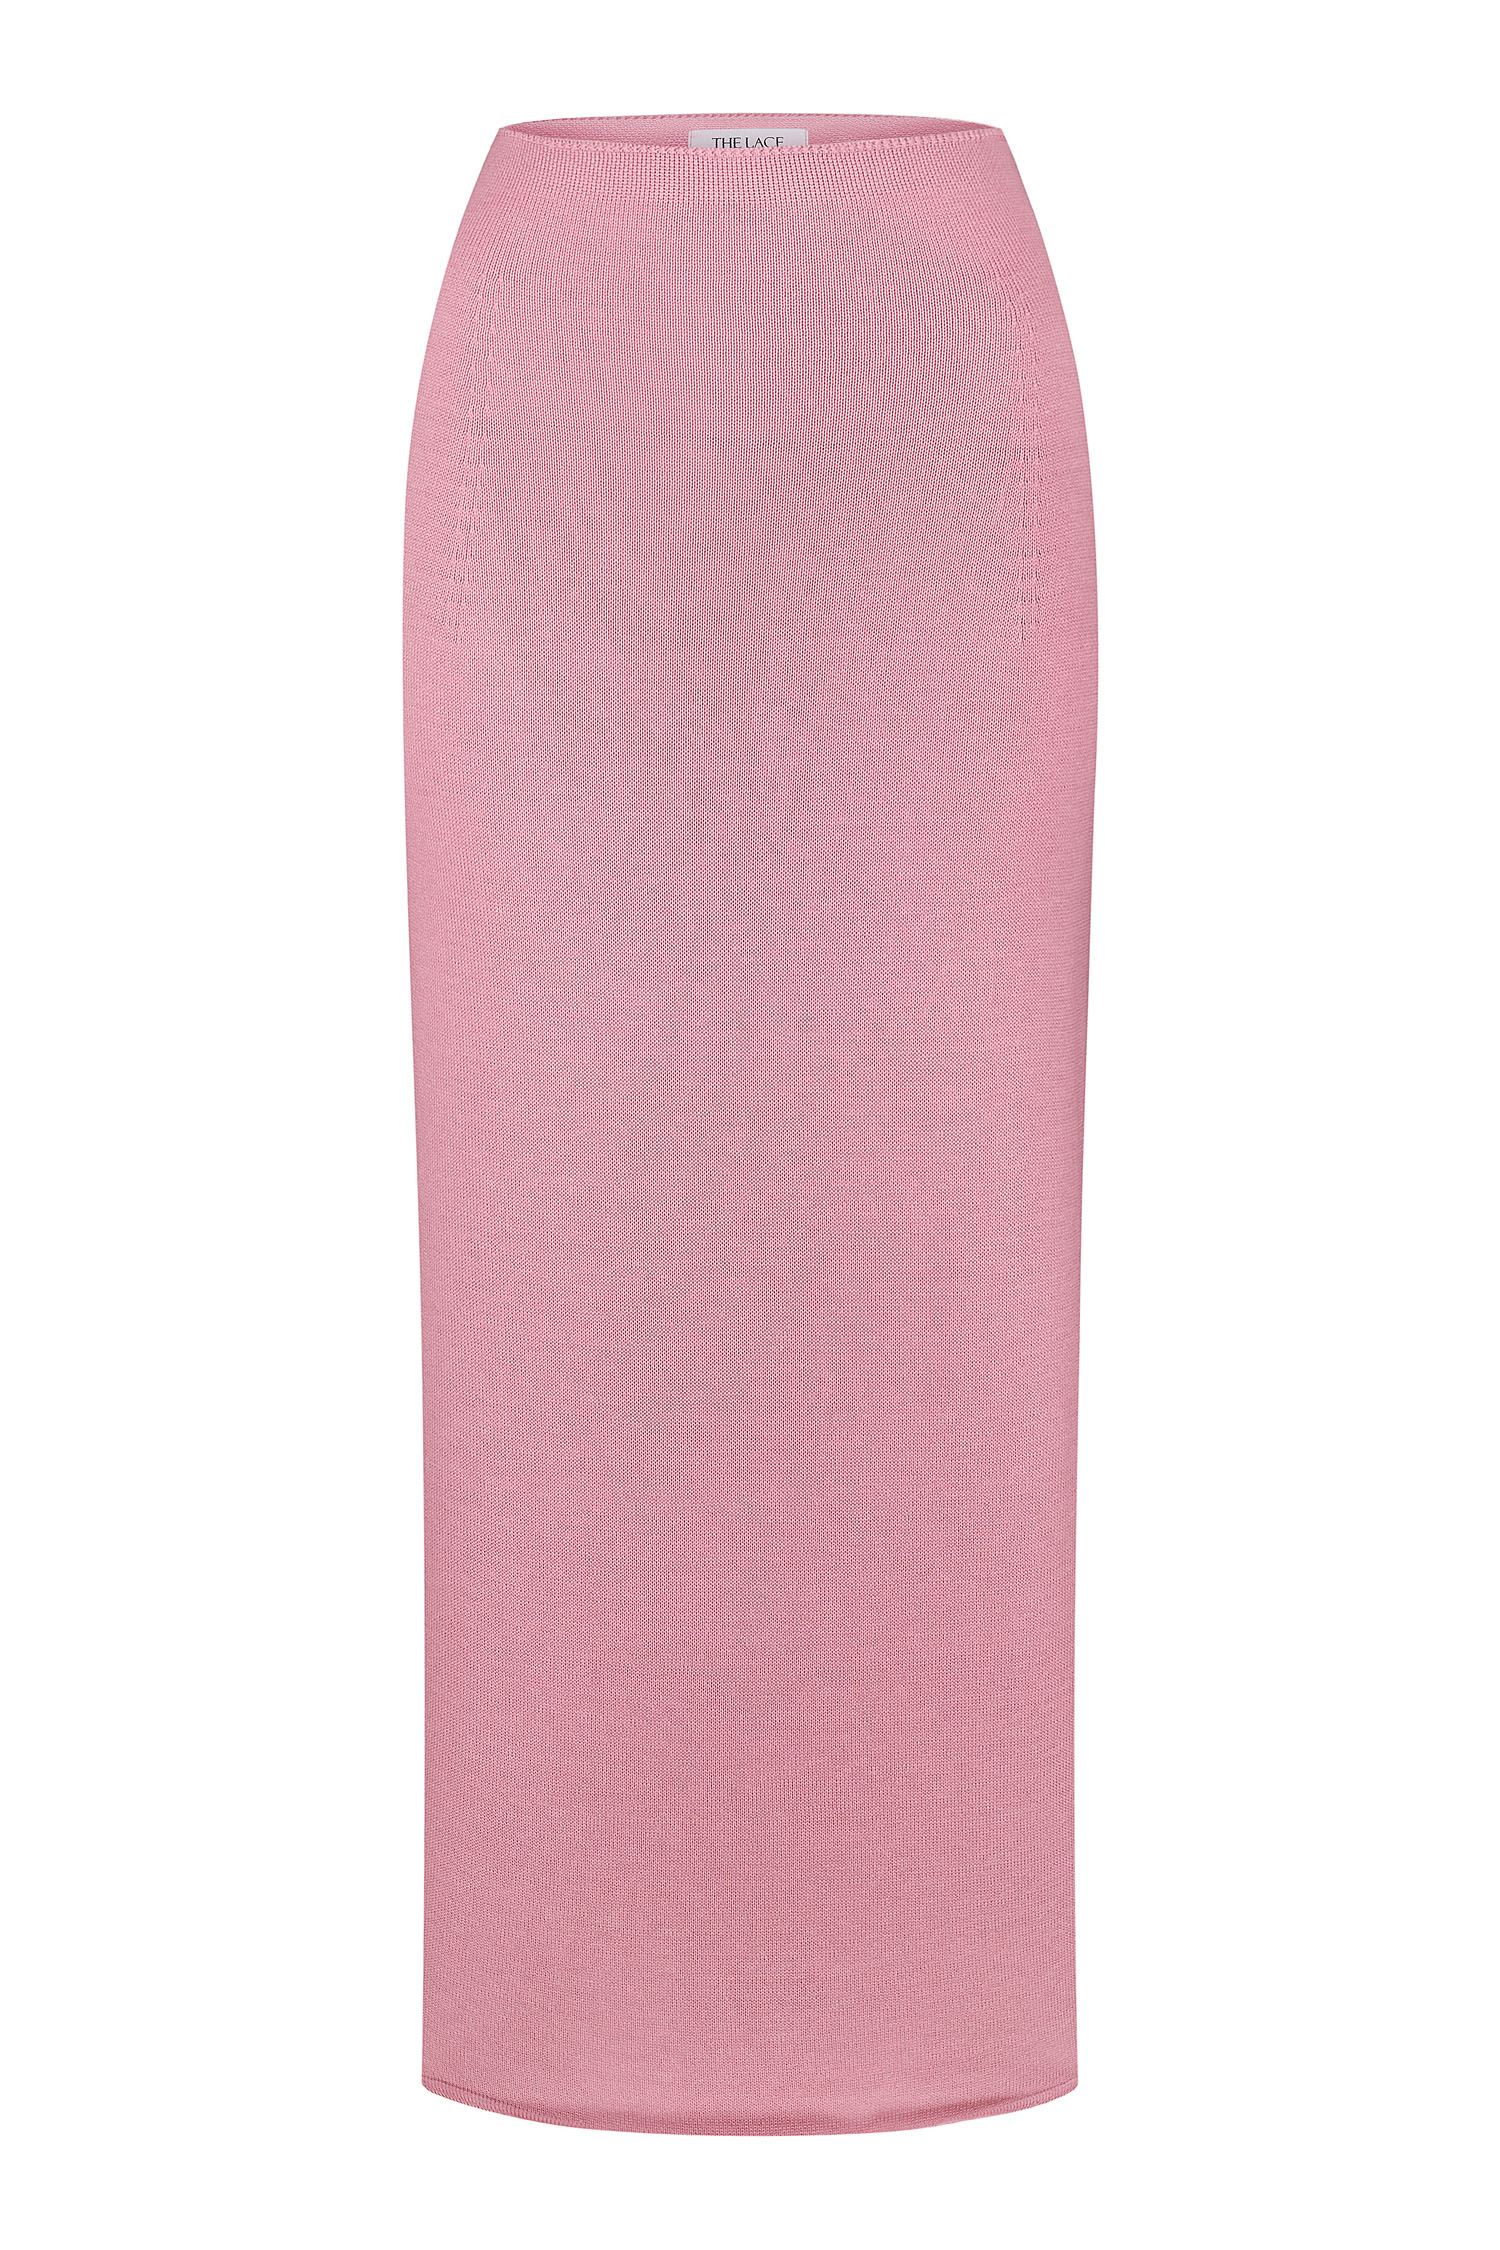 Трикотажна спідниця з низькою талією рожева - THE LACE photo 138230